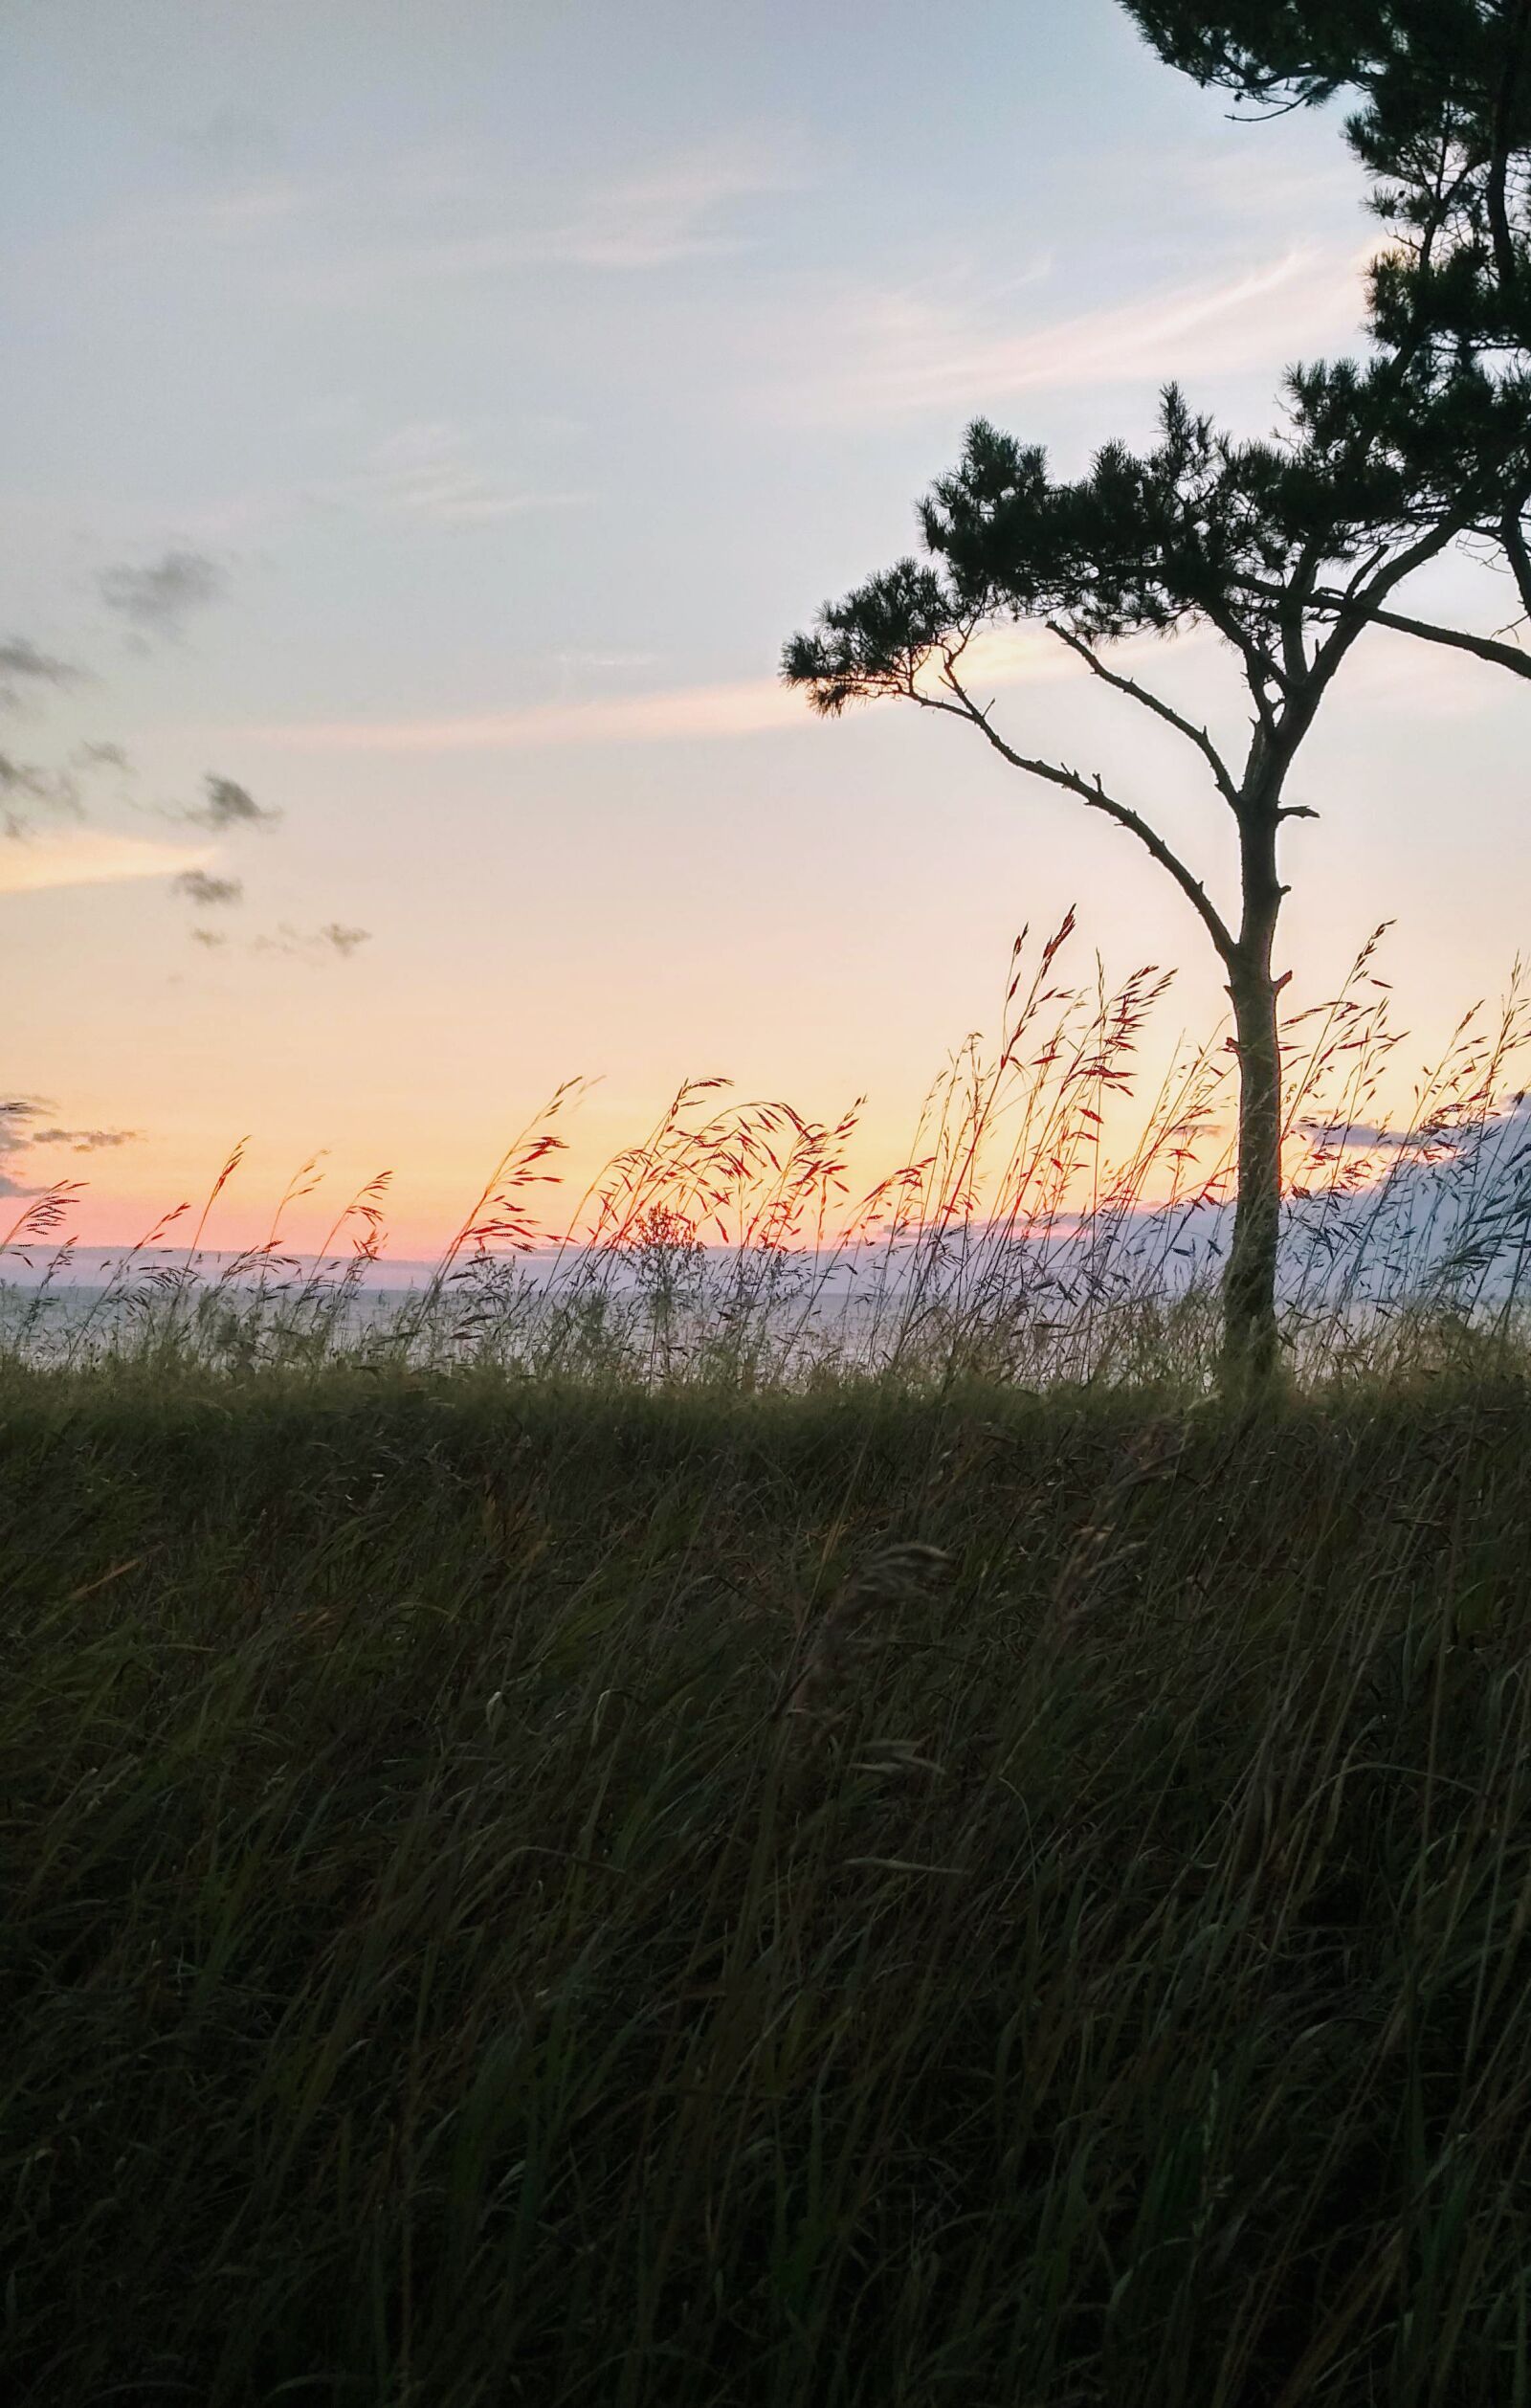 Xiaomi Redmi 4X sample photo. Nature, sunset, sky photography